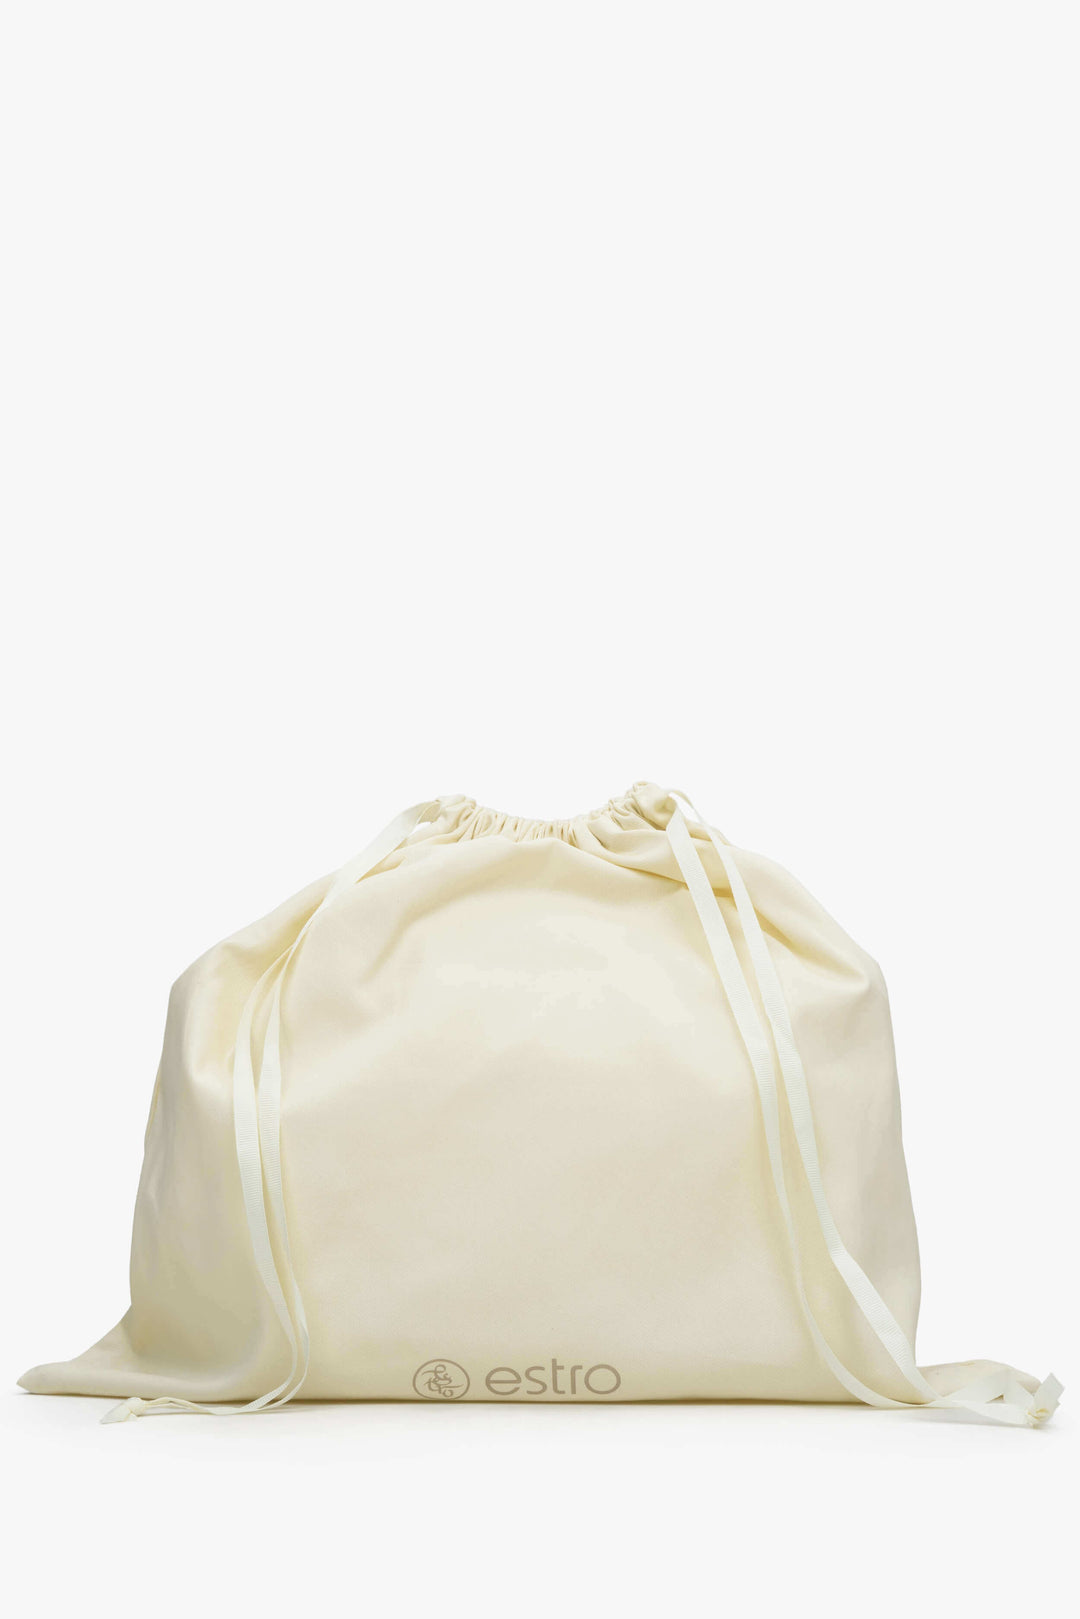 Women's Sand Beige Baguette Bag made of Genuine Leather Estro ER00113730